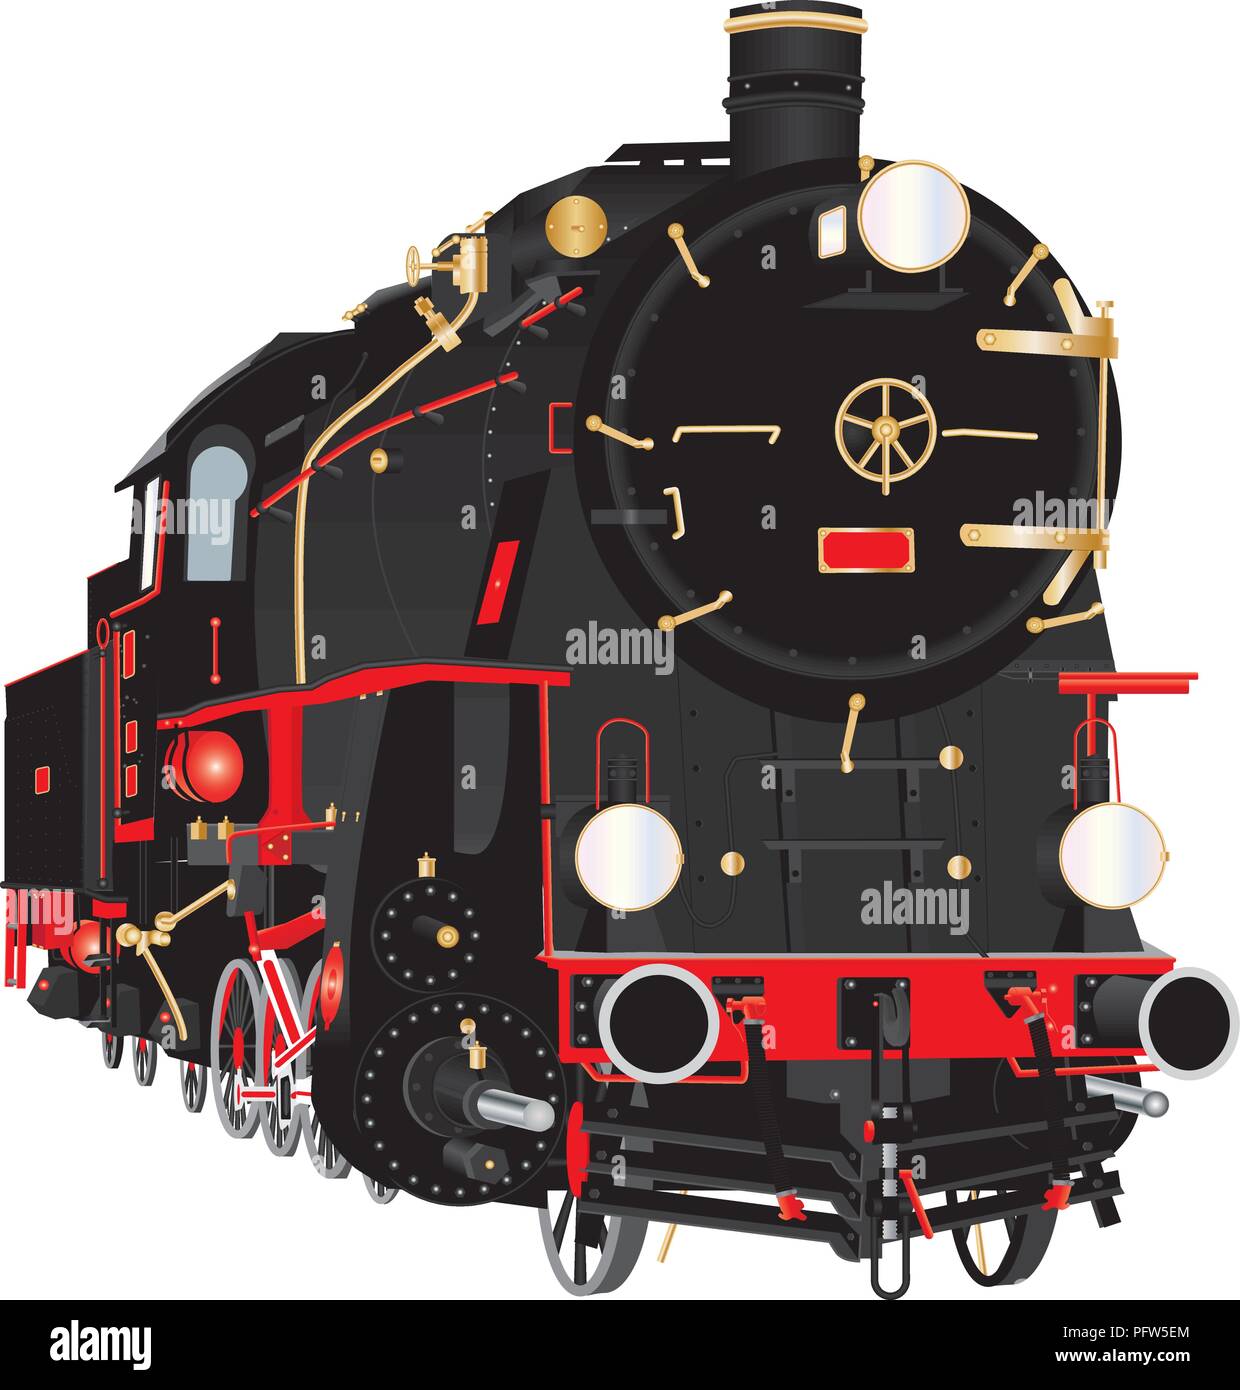 Une illustration détaillée d'un ancien combattant 10 Wheeler d'offres de fret à vapeur Locomotive avec des raccords de tuyauterie en cuivre et d'une livrée rouge et noir et rouge et blanc Illustration de Vecteur